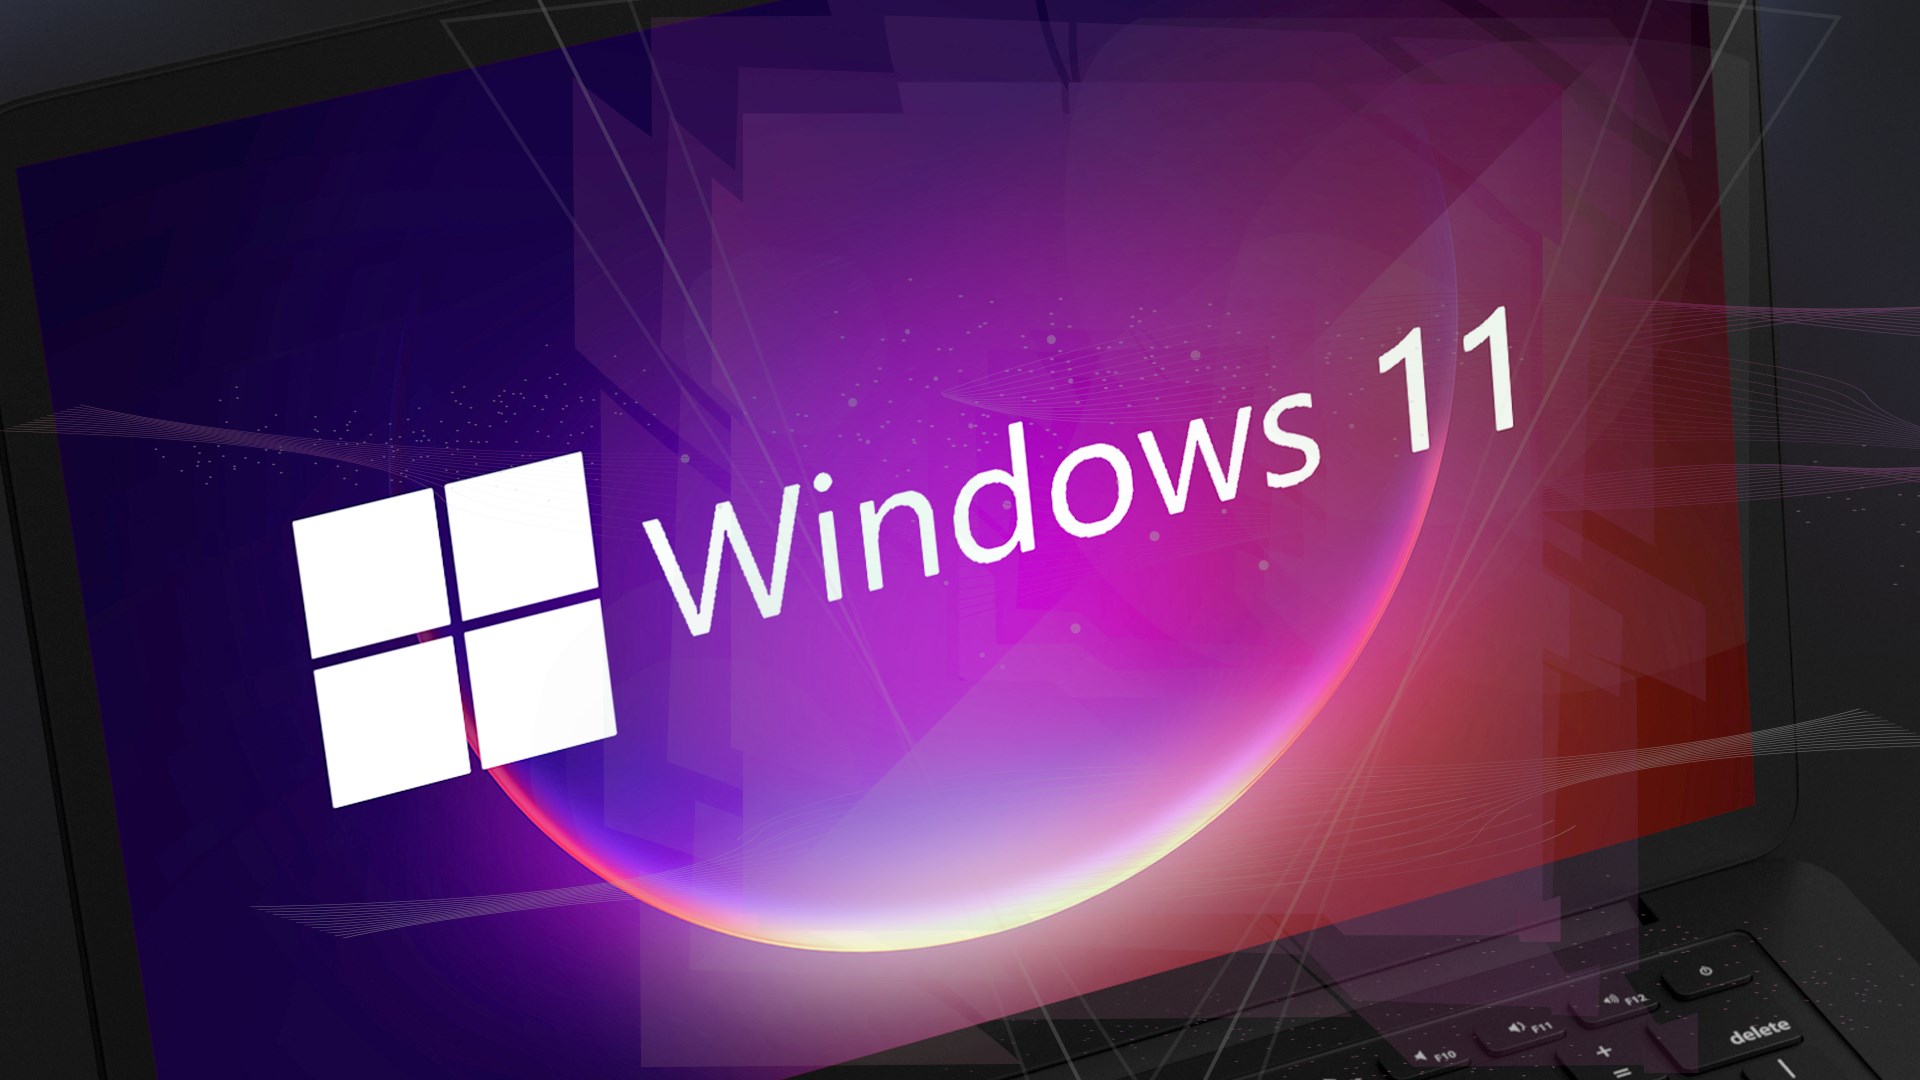 Windows 11 sayesinde monitörünüz daha iyi renkler gösterecek